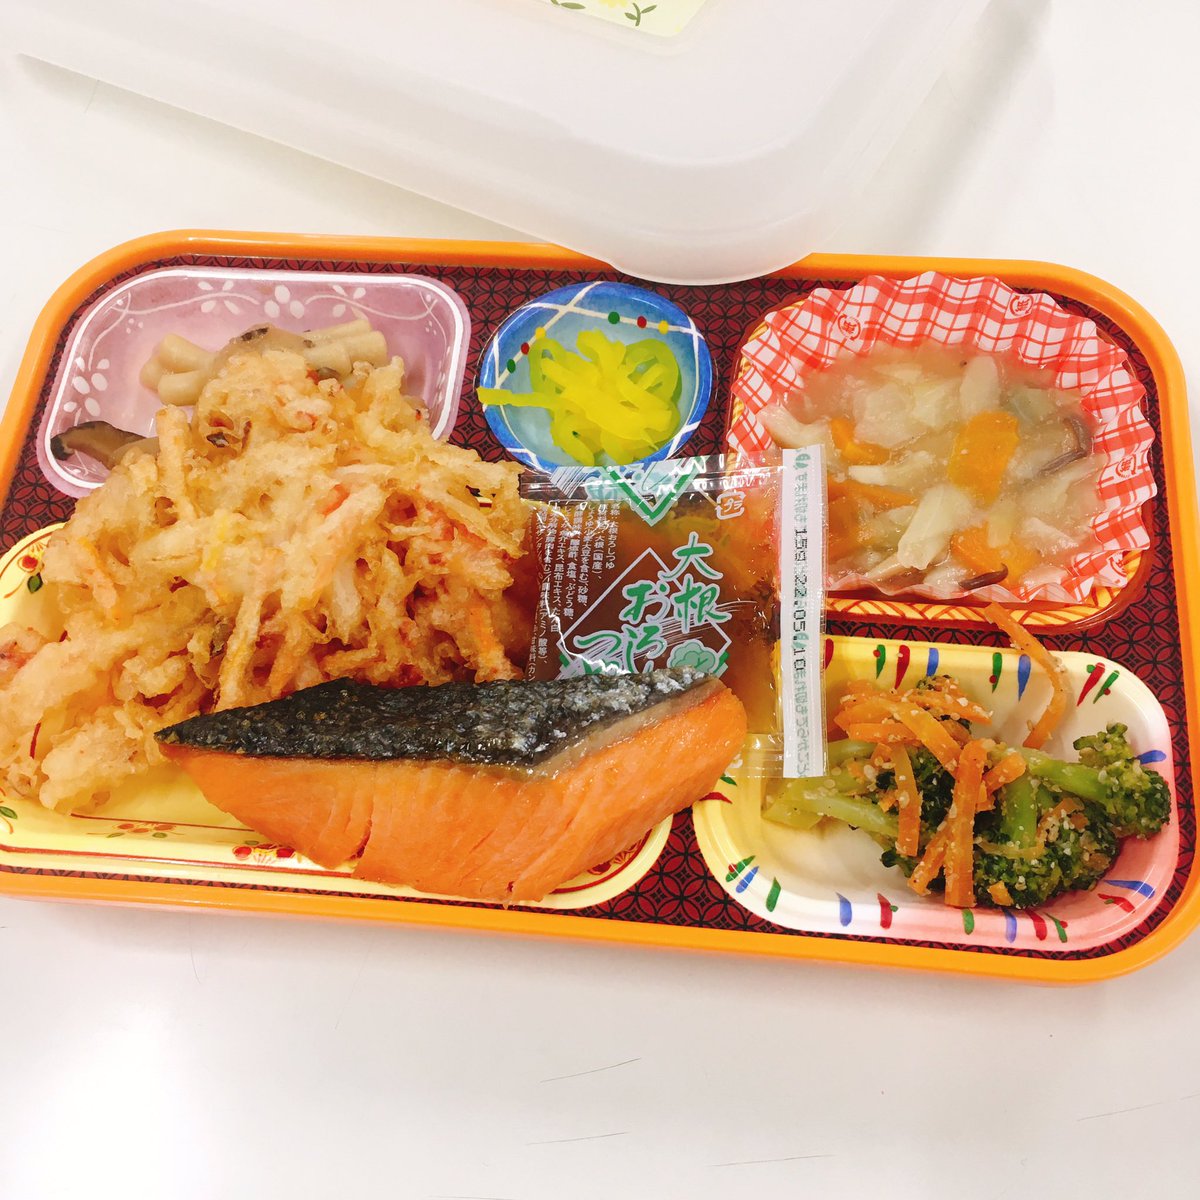 とうもうスペシャルランチ 340円 銀鮭塩焼き&八宝菜🥢 https://t.co/LR7H2XeAD9